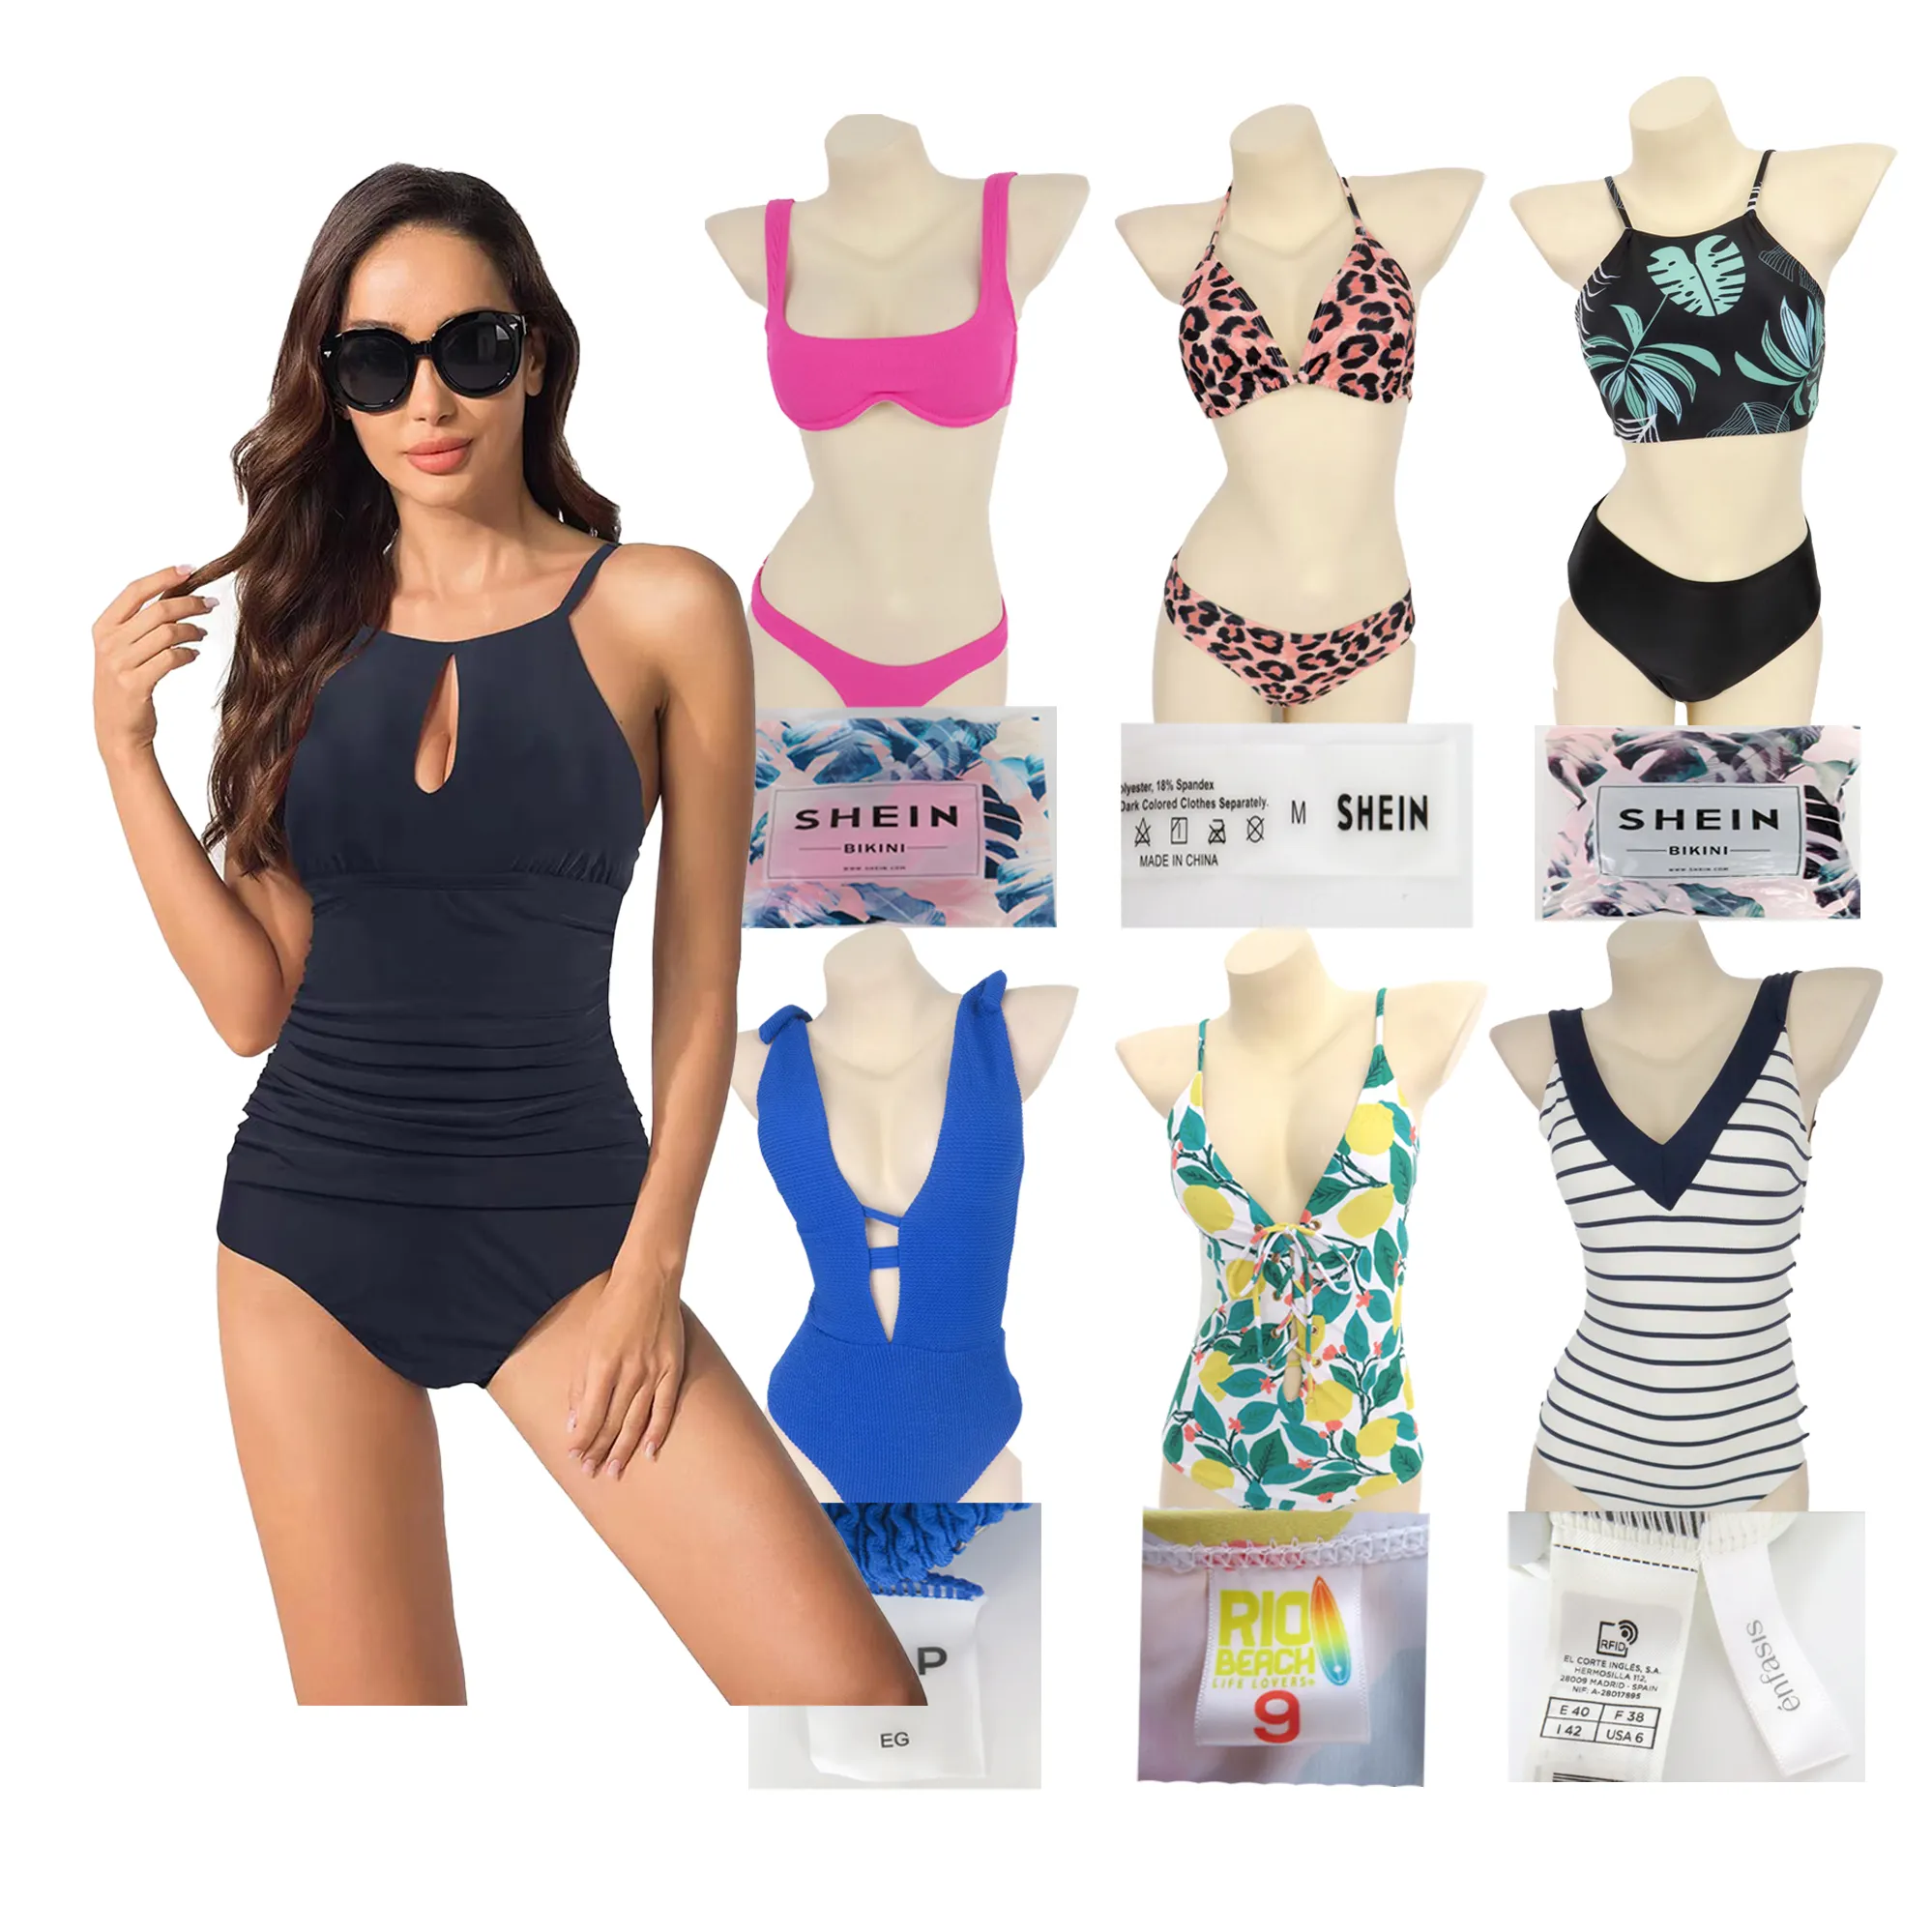 HPP STOCK Whole cancelled Branded Stock Bikini Set Ladies beach costume da bagno costumi da bagno e costumi da bagno